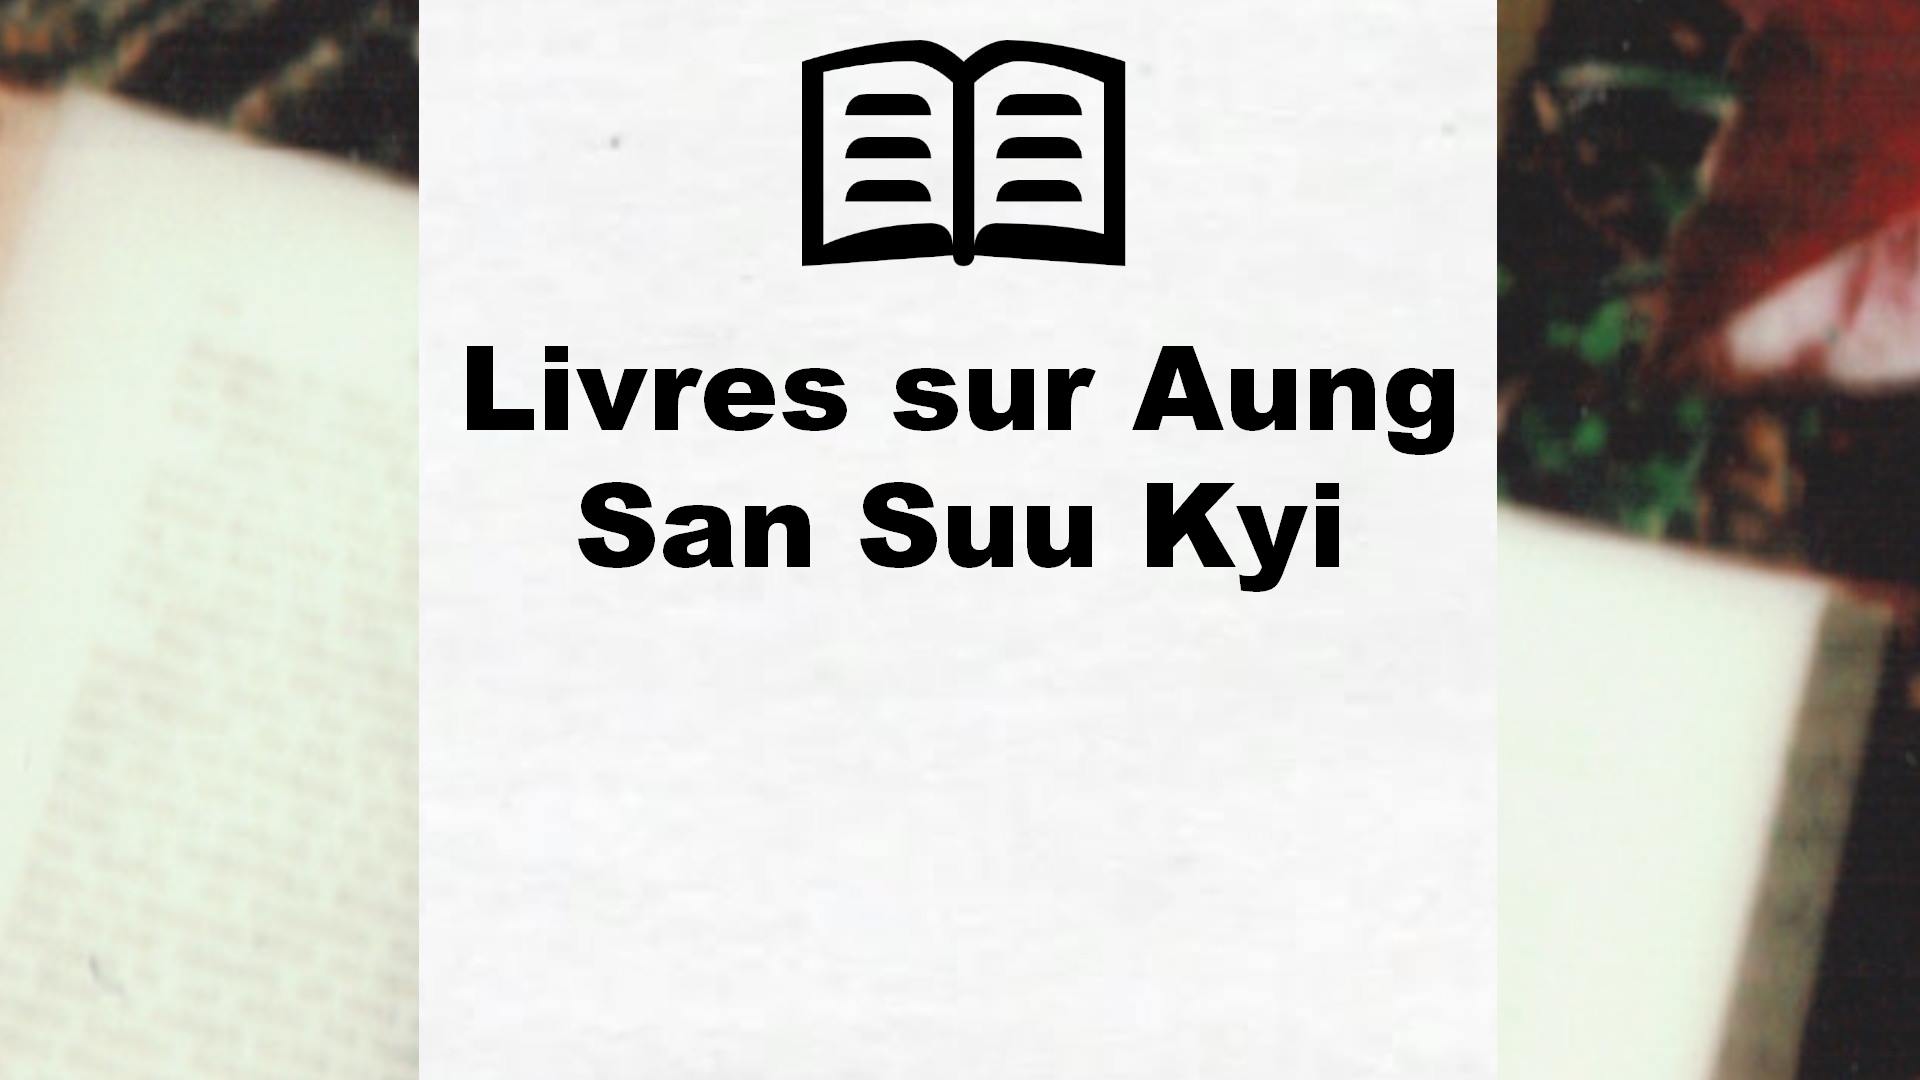 Livres sur Aung San Suu Kyi